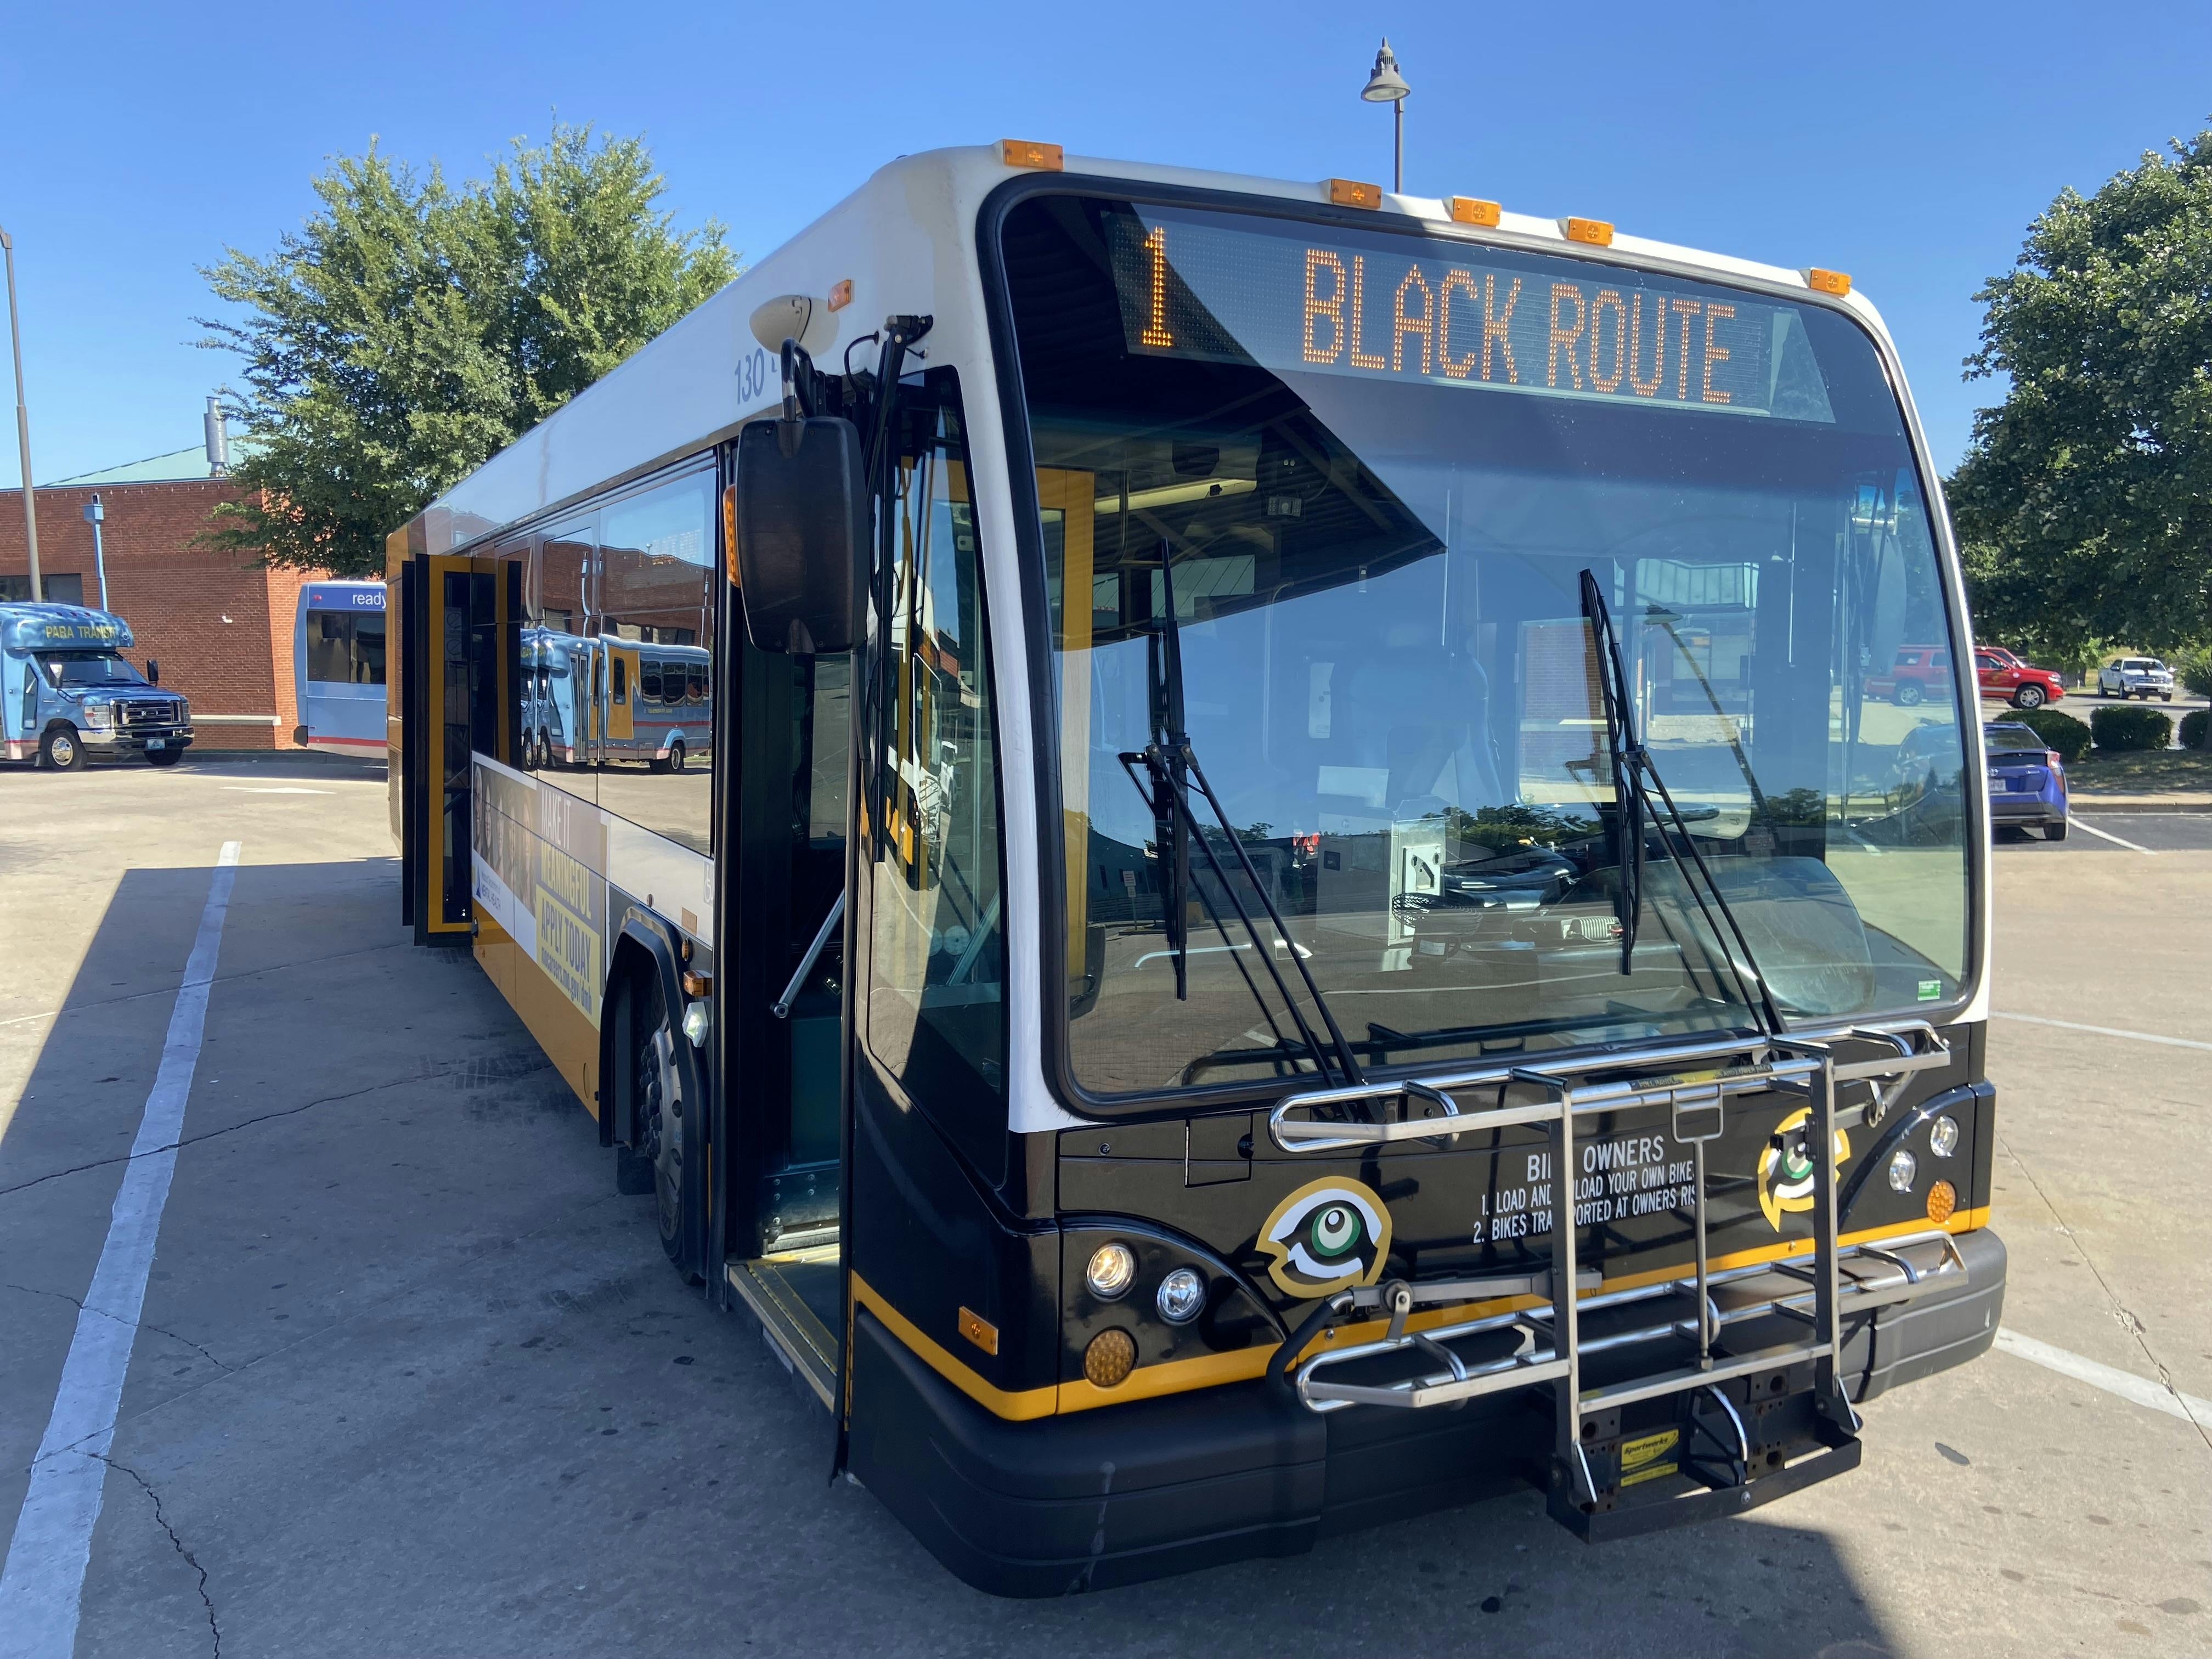 Black route bus